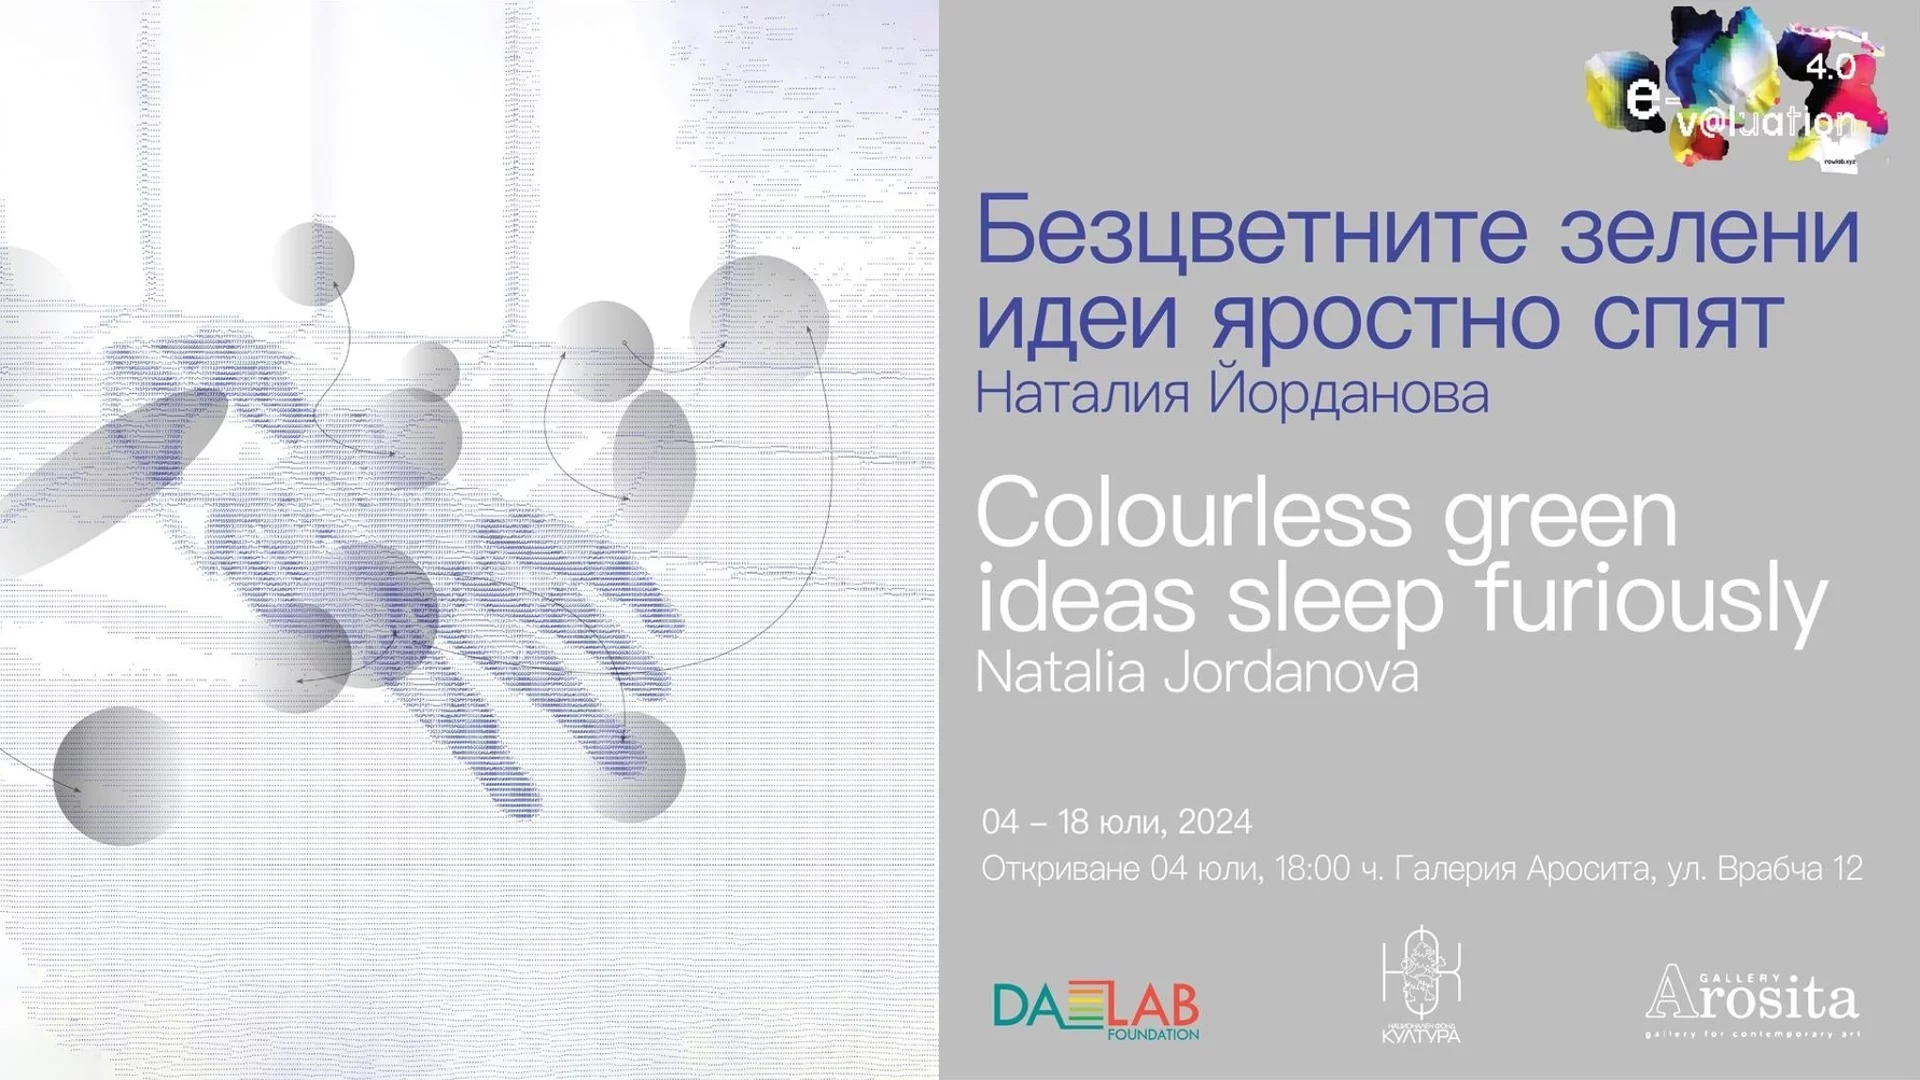 "Безцветните зелени идеи яростно спят" - изложба на Наталия Йорданова